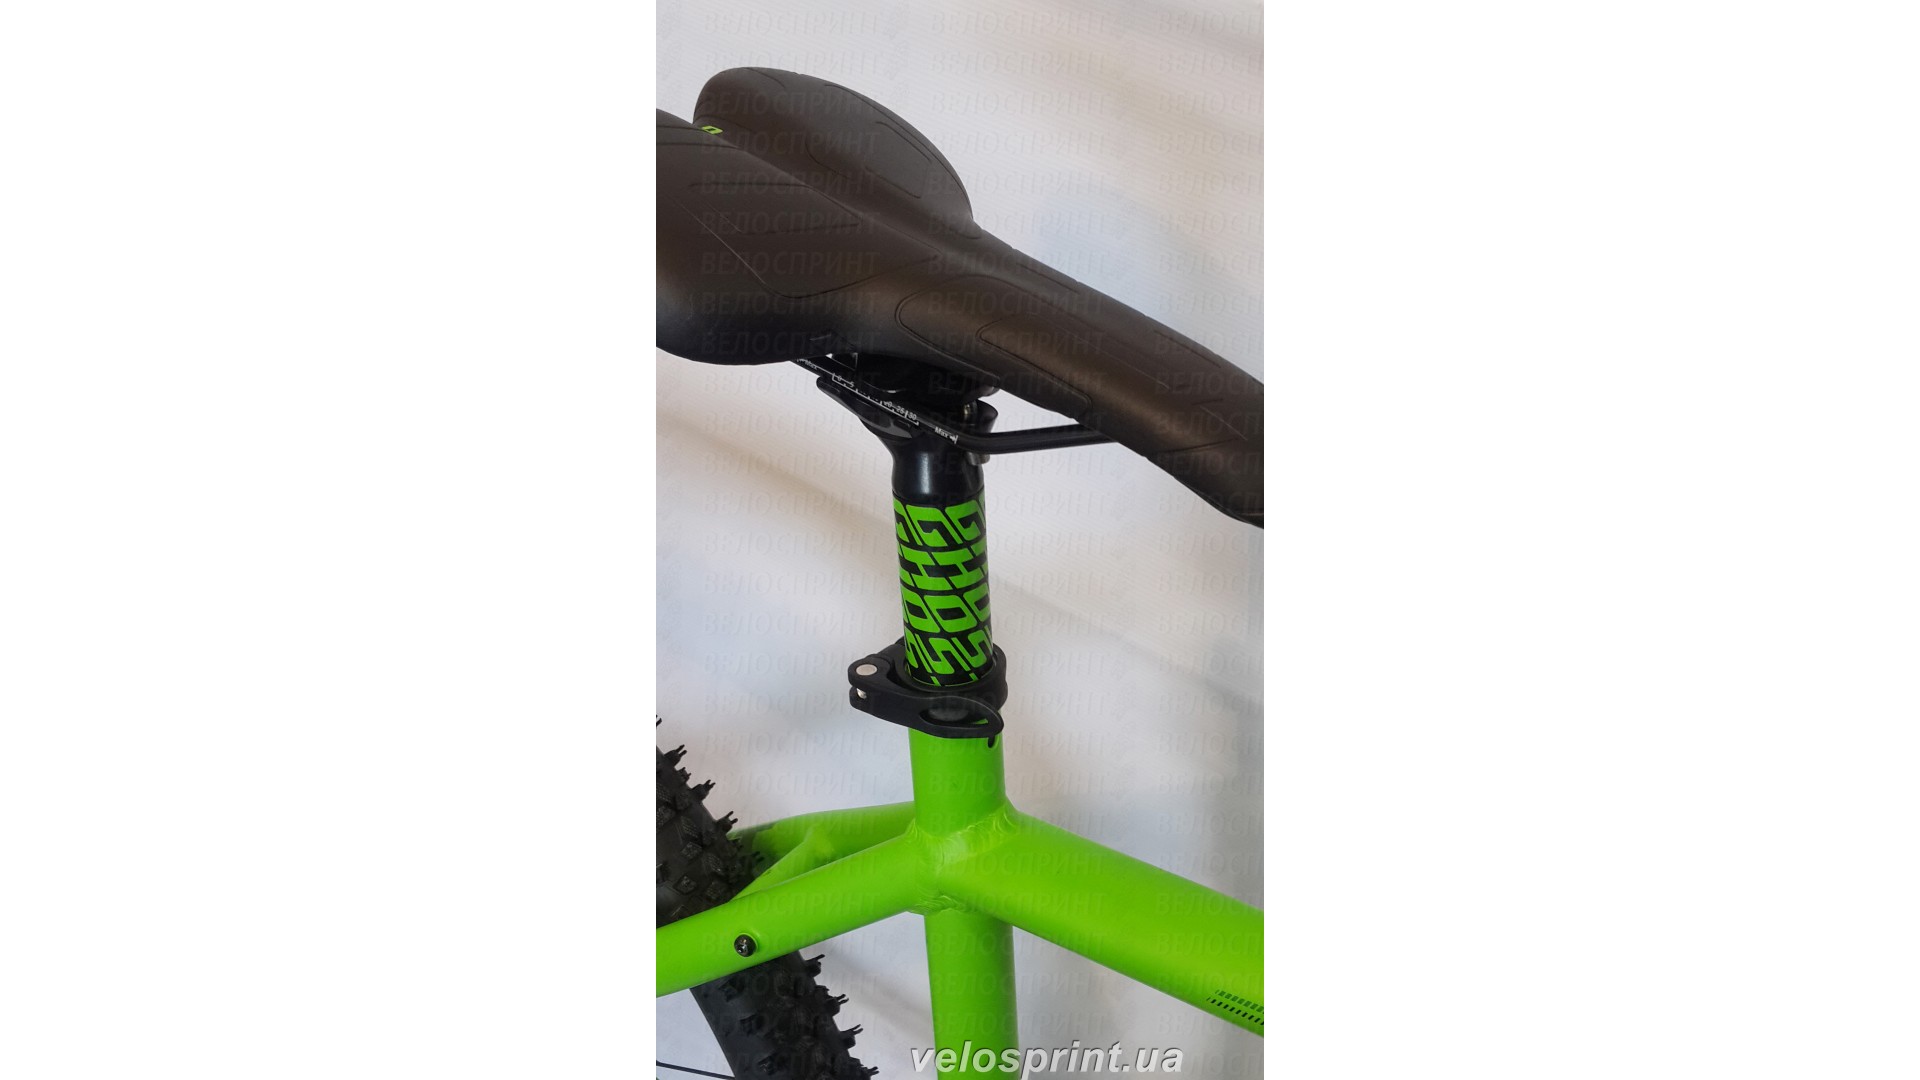 Велосипед GHOST Kato 3 green/darkgreen/black седло год 2016